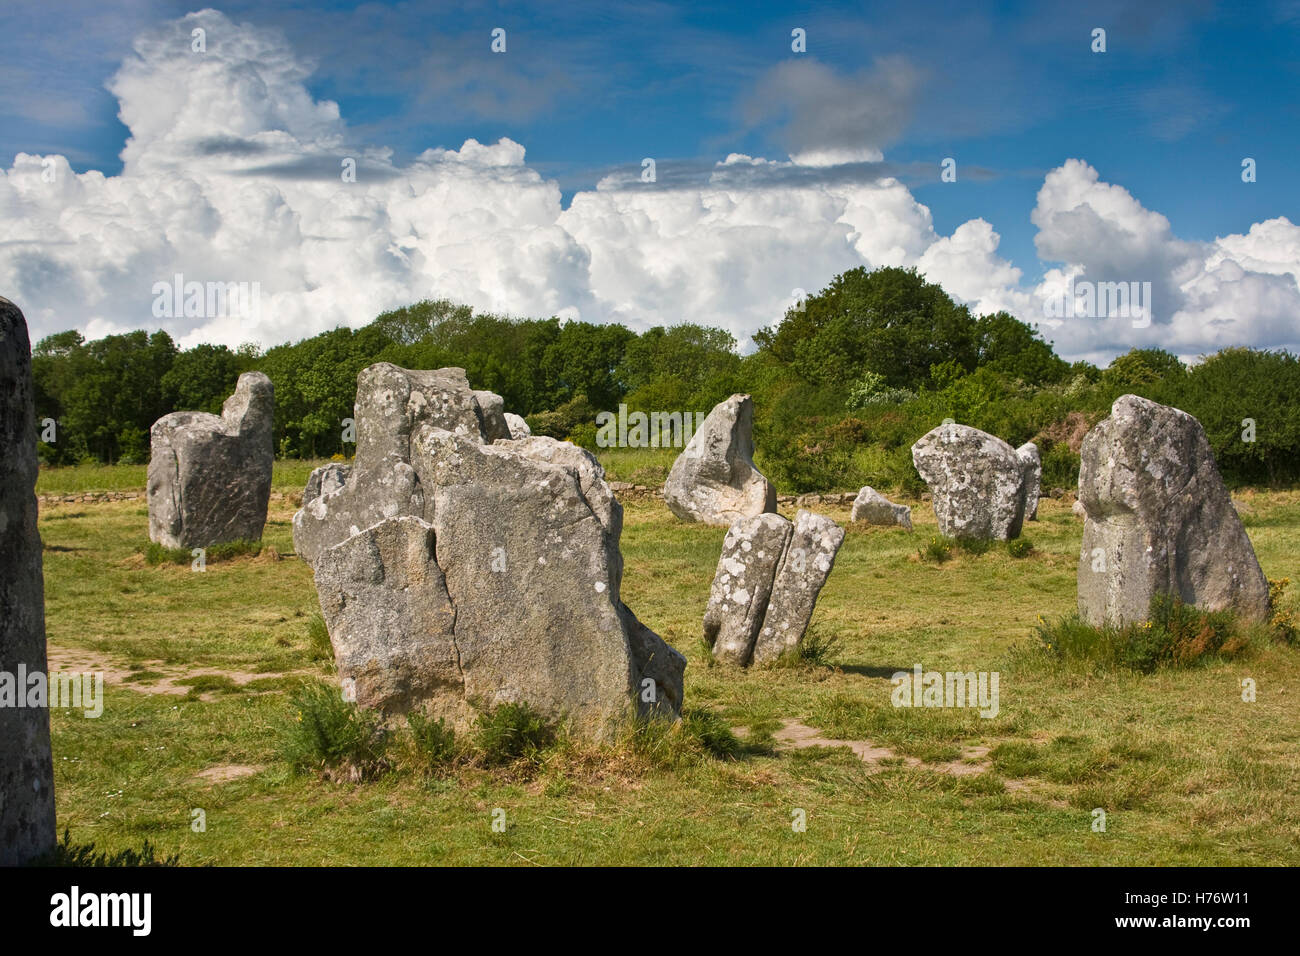 Menhire in Grüner Wiese, Im Hintergrund Wlad Und Dicke Cumuluswolken; Menhire in grüne Wiese, Wald und dicken Kumuluswolke Stockfoto